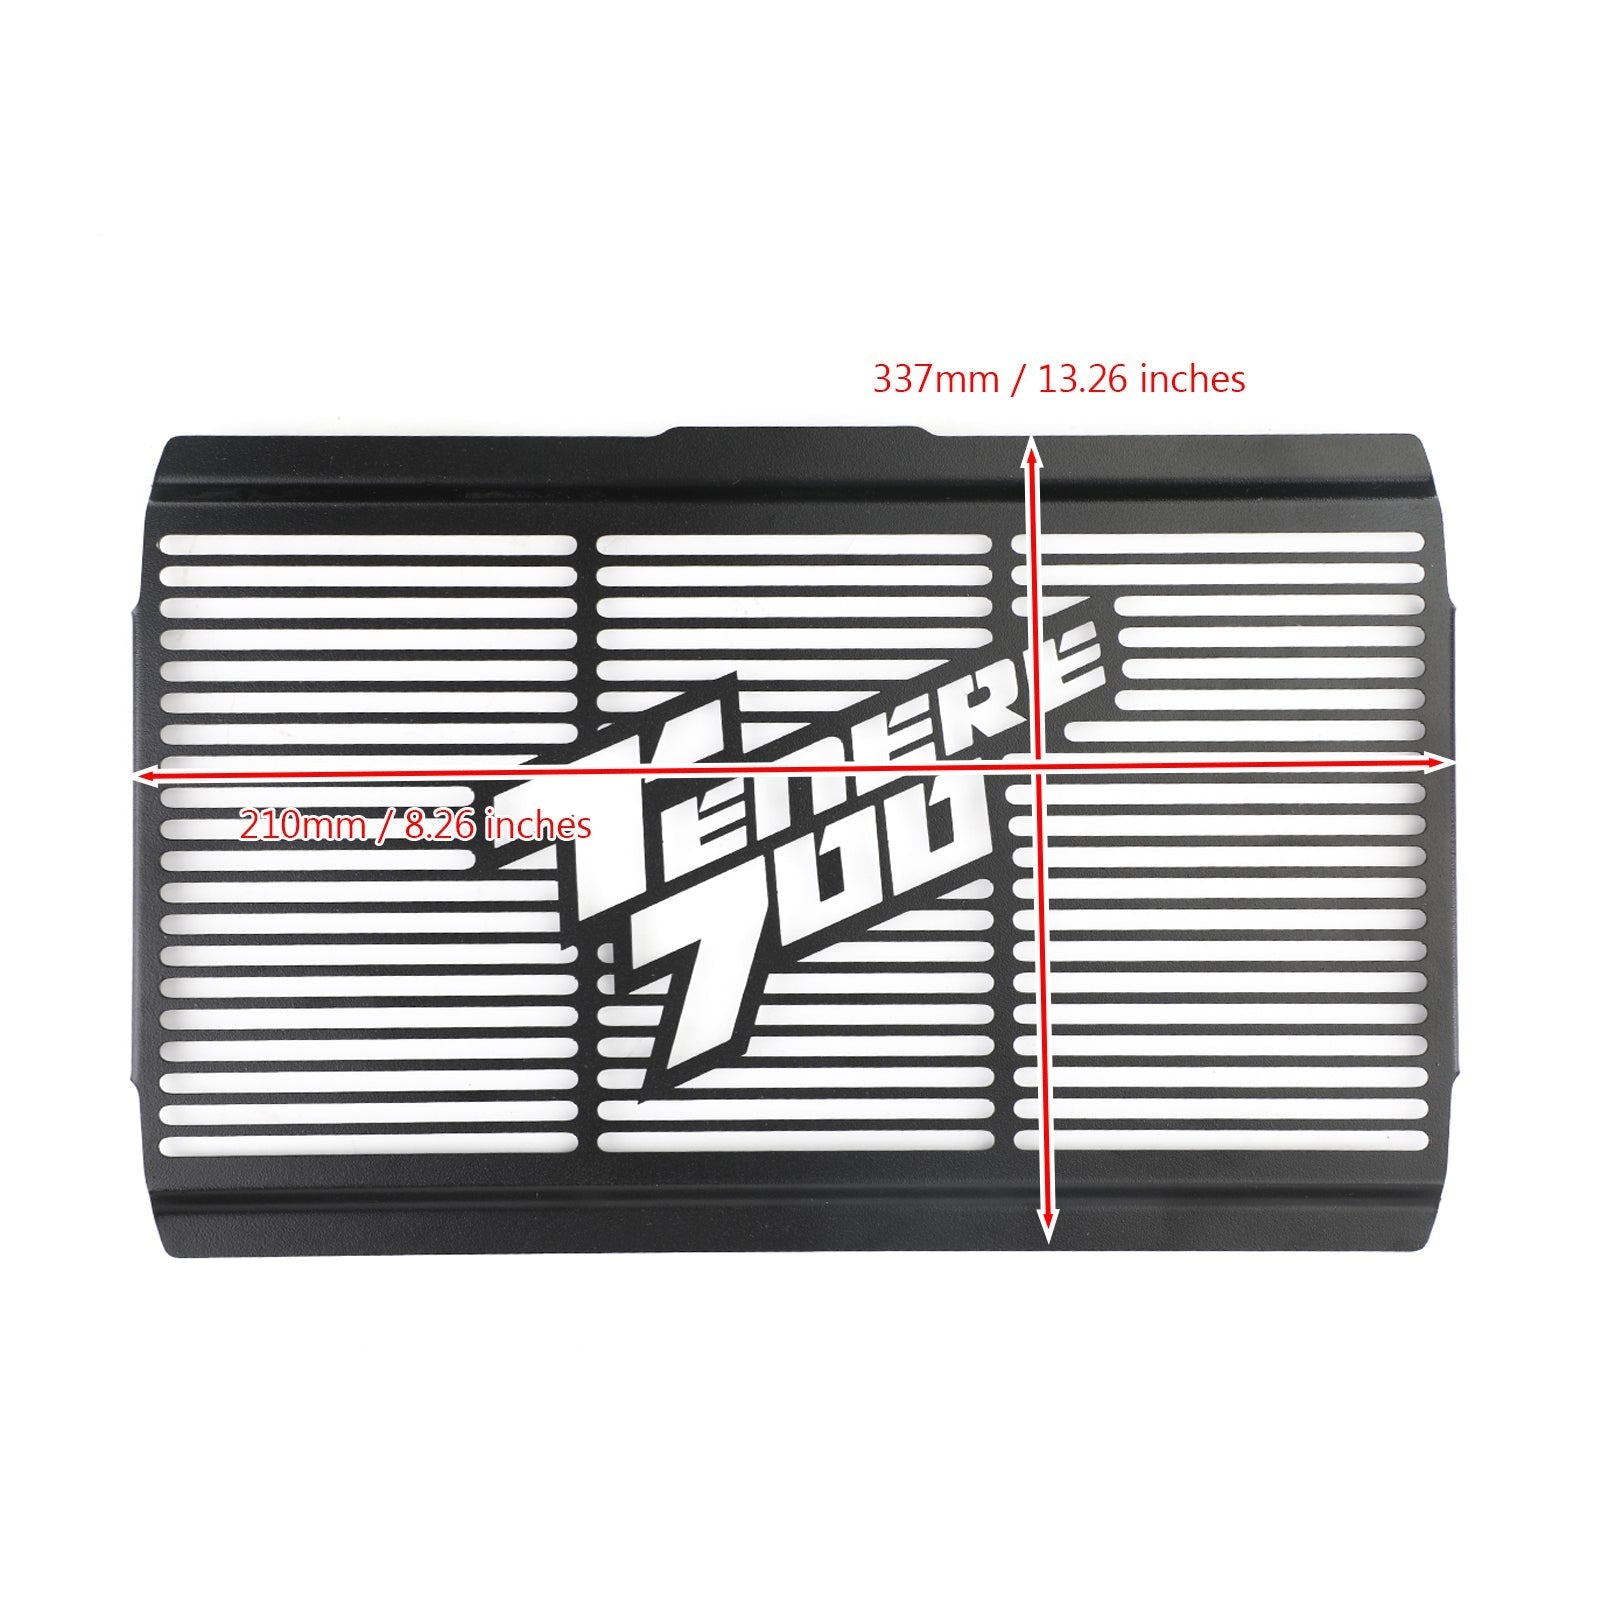 Grille de protection de protection de radiateur pour Yamaha XTZ700 Tenere 700 2019-2020 générique